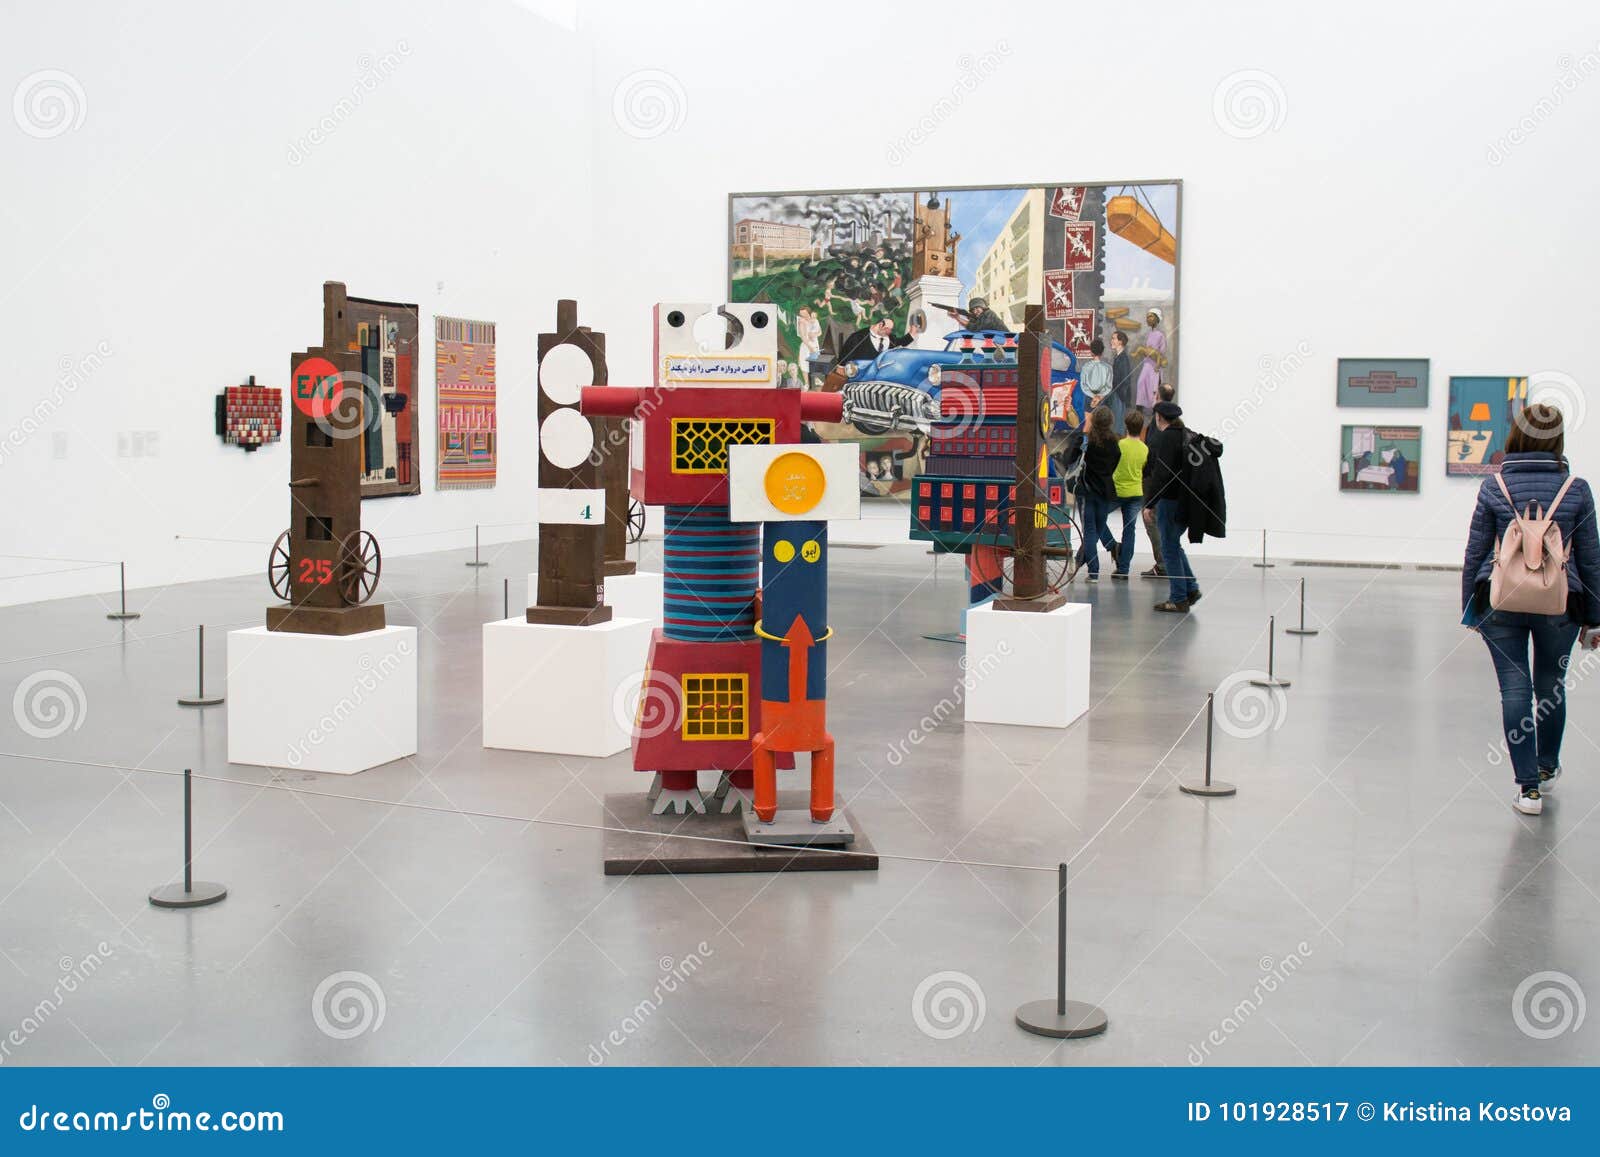 Collectieve installaties in beroemde Tate Modern in Londen. Collectieve installaties en bezoekers in beroemde die Tate Modern, in het hart van Londen wordt gevestigd